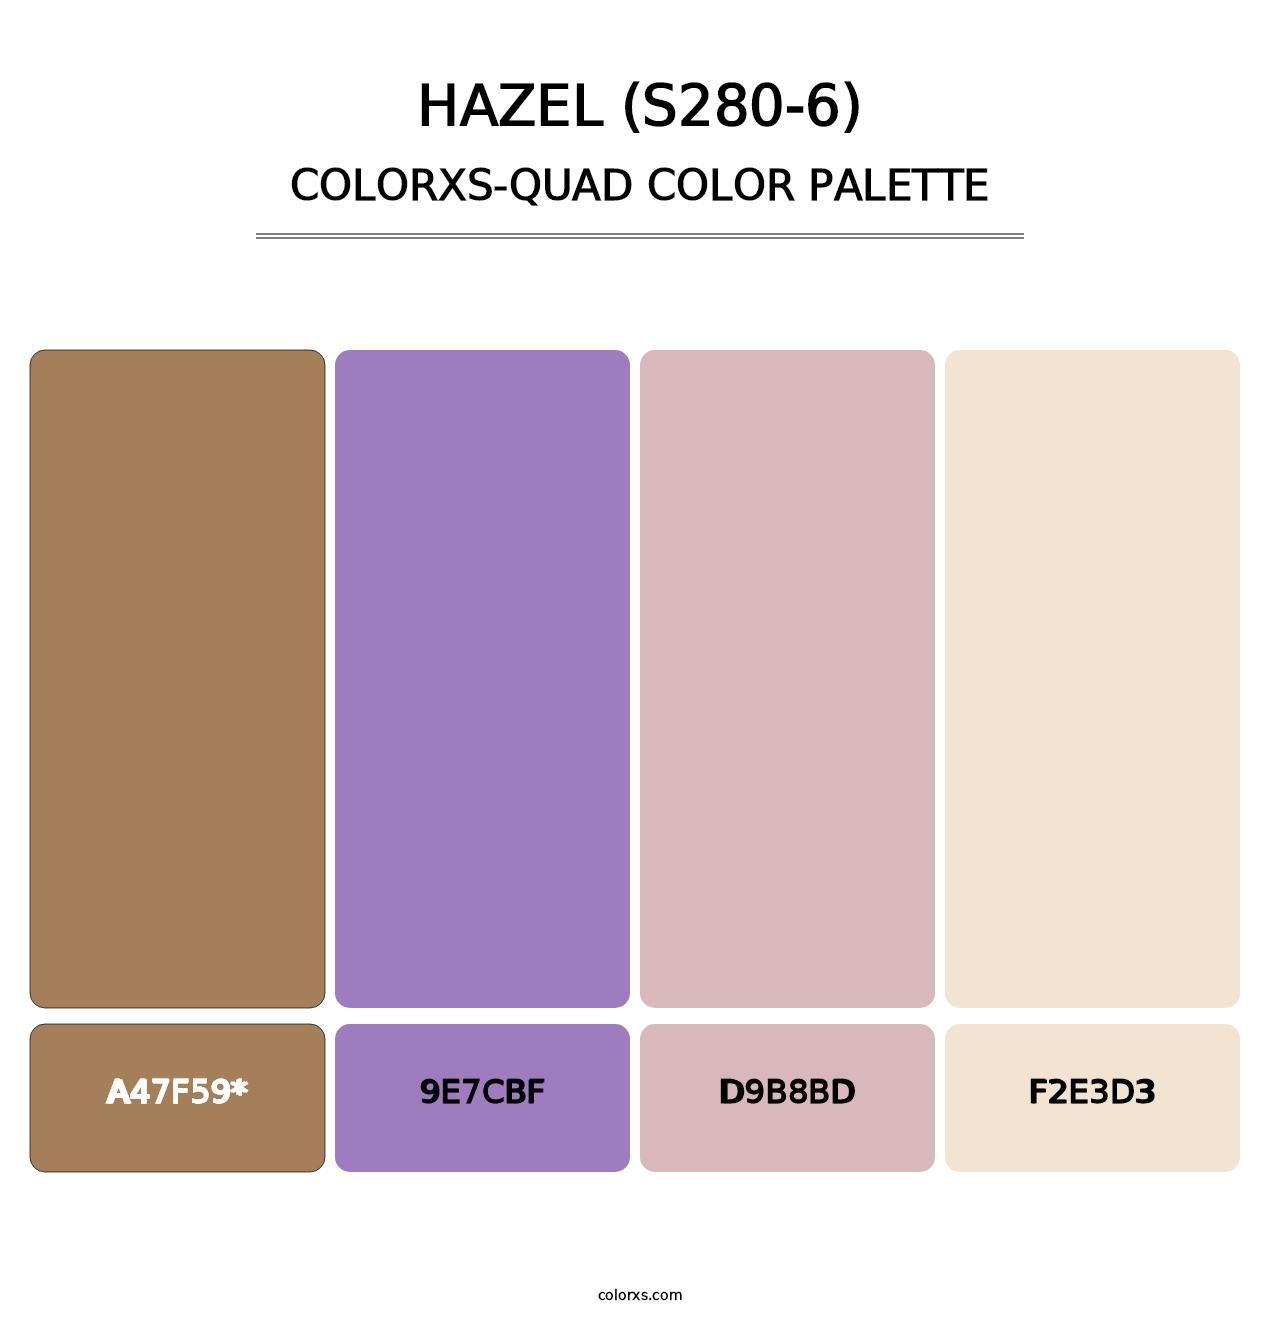 Hazel (S280-6) - Colorxs Quad Palette